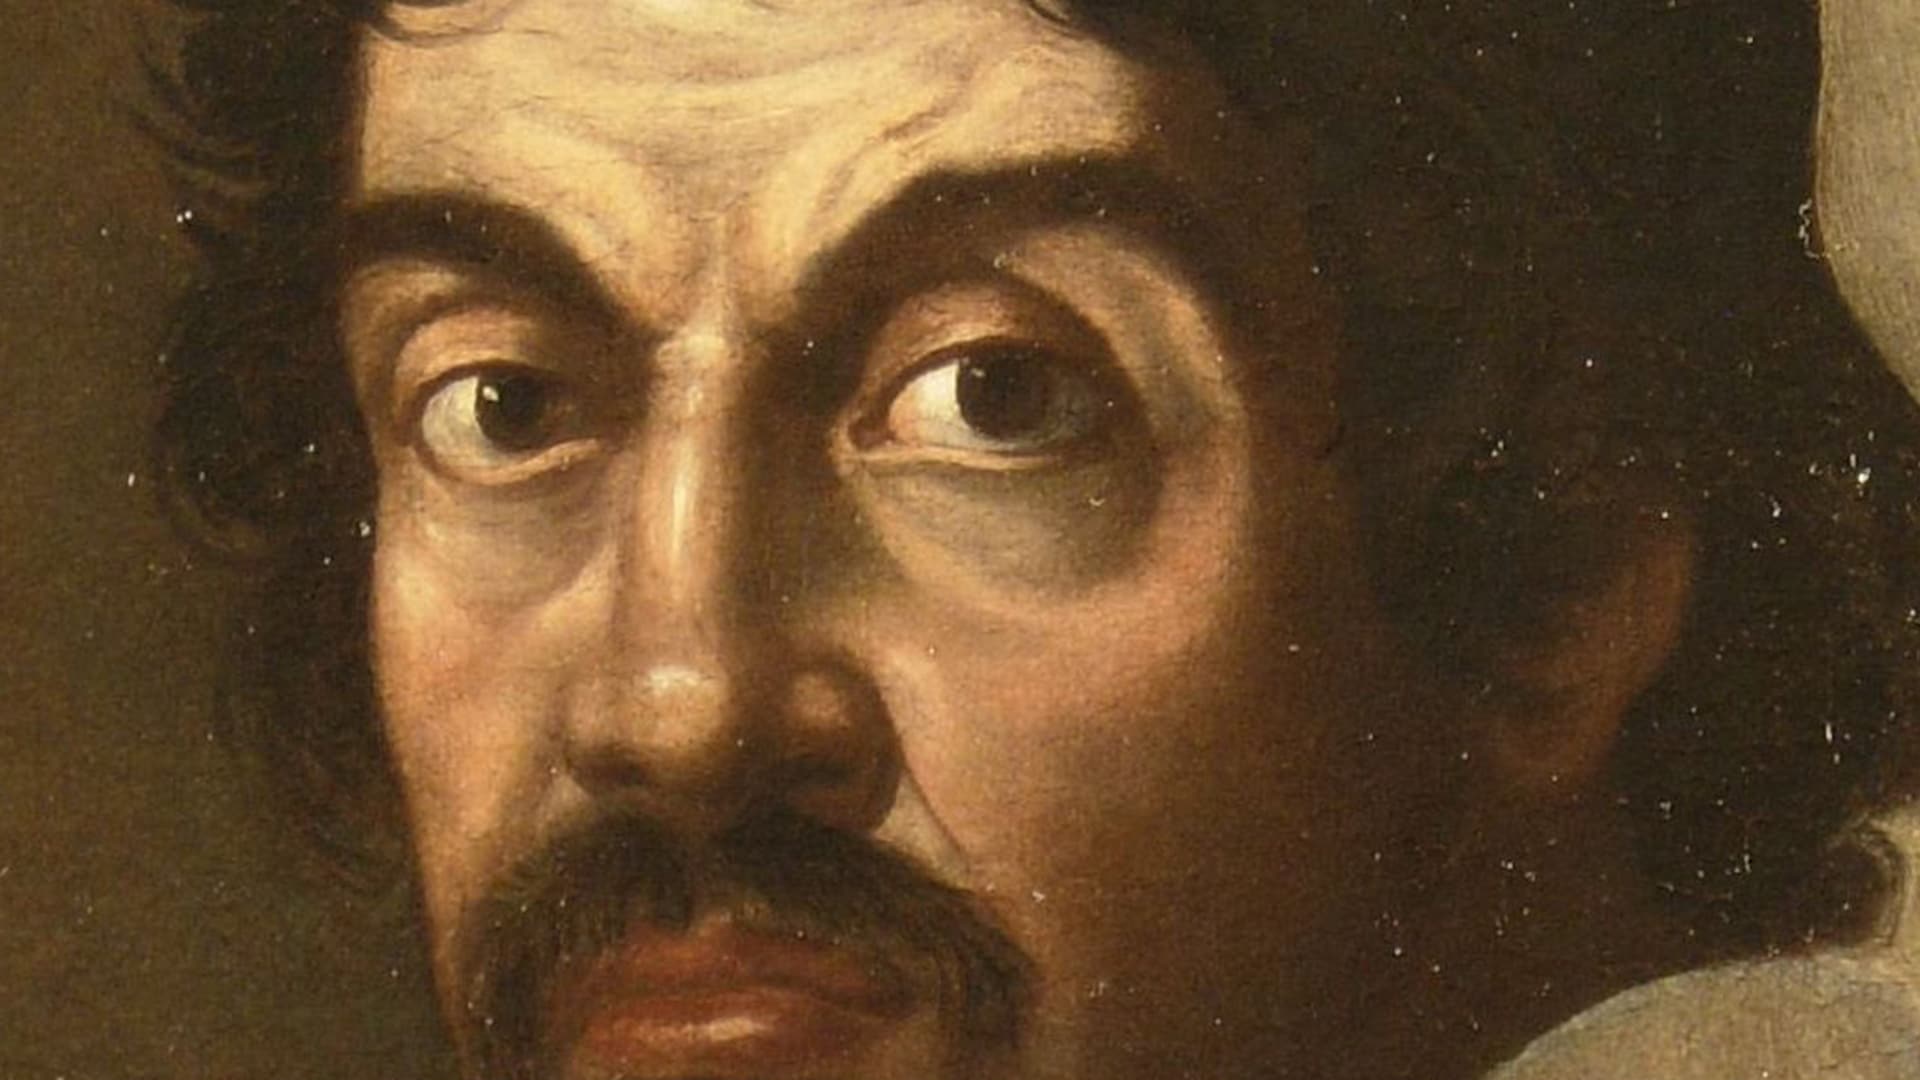 Caravaggio - O artista barroco